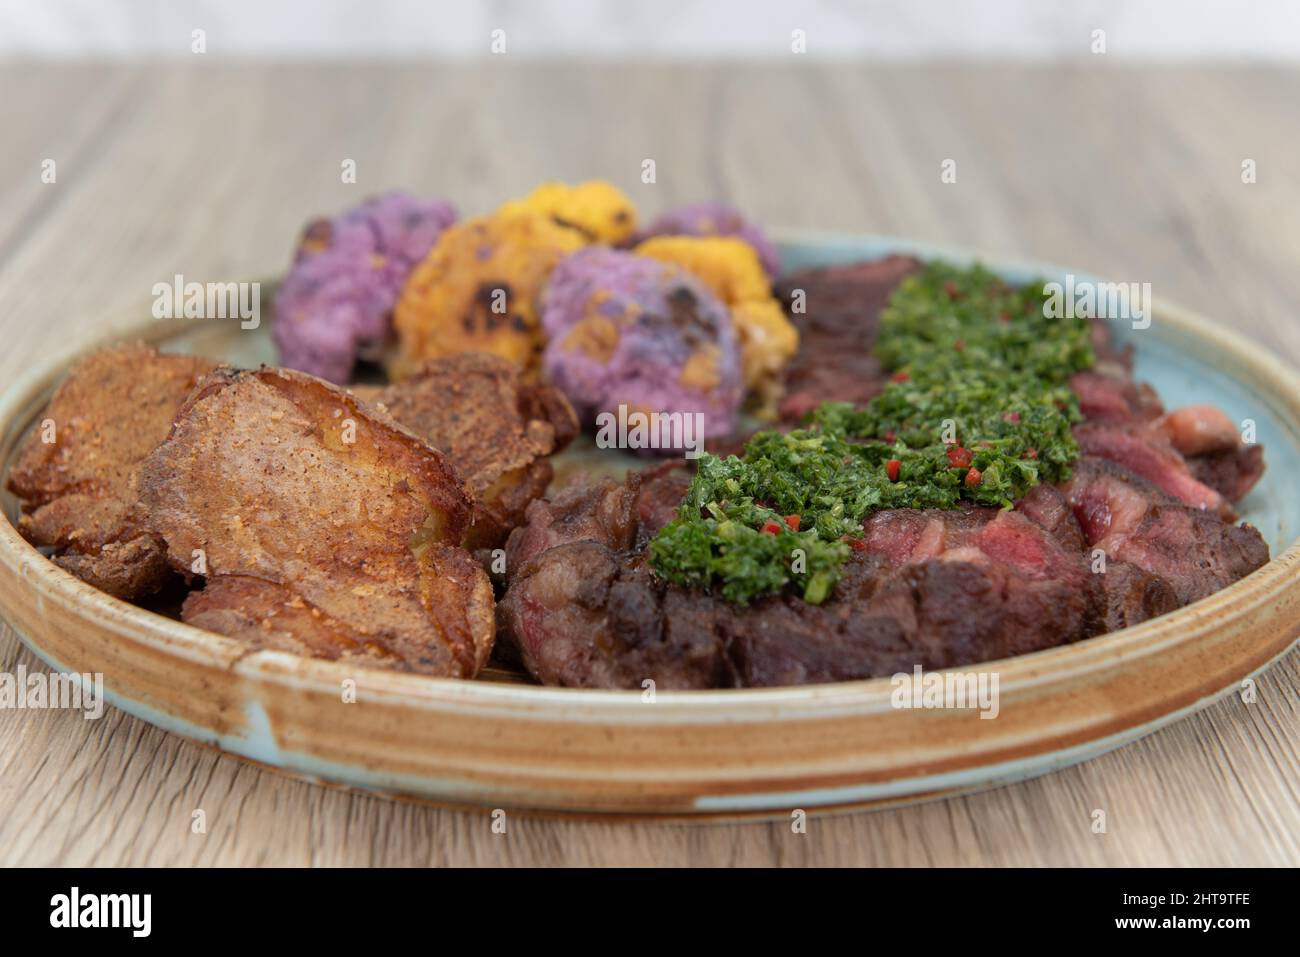 Ein voller Teller mit gegrilltem Ribeye-Steak, gebratenen Kochbananen und bunten Blumenkohlbissen zum Essen als komplette Mahlzeit. Stockfoto